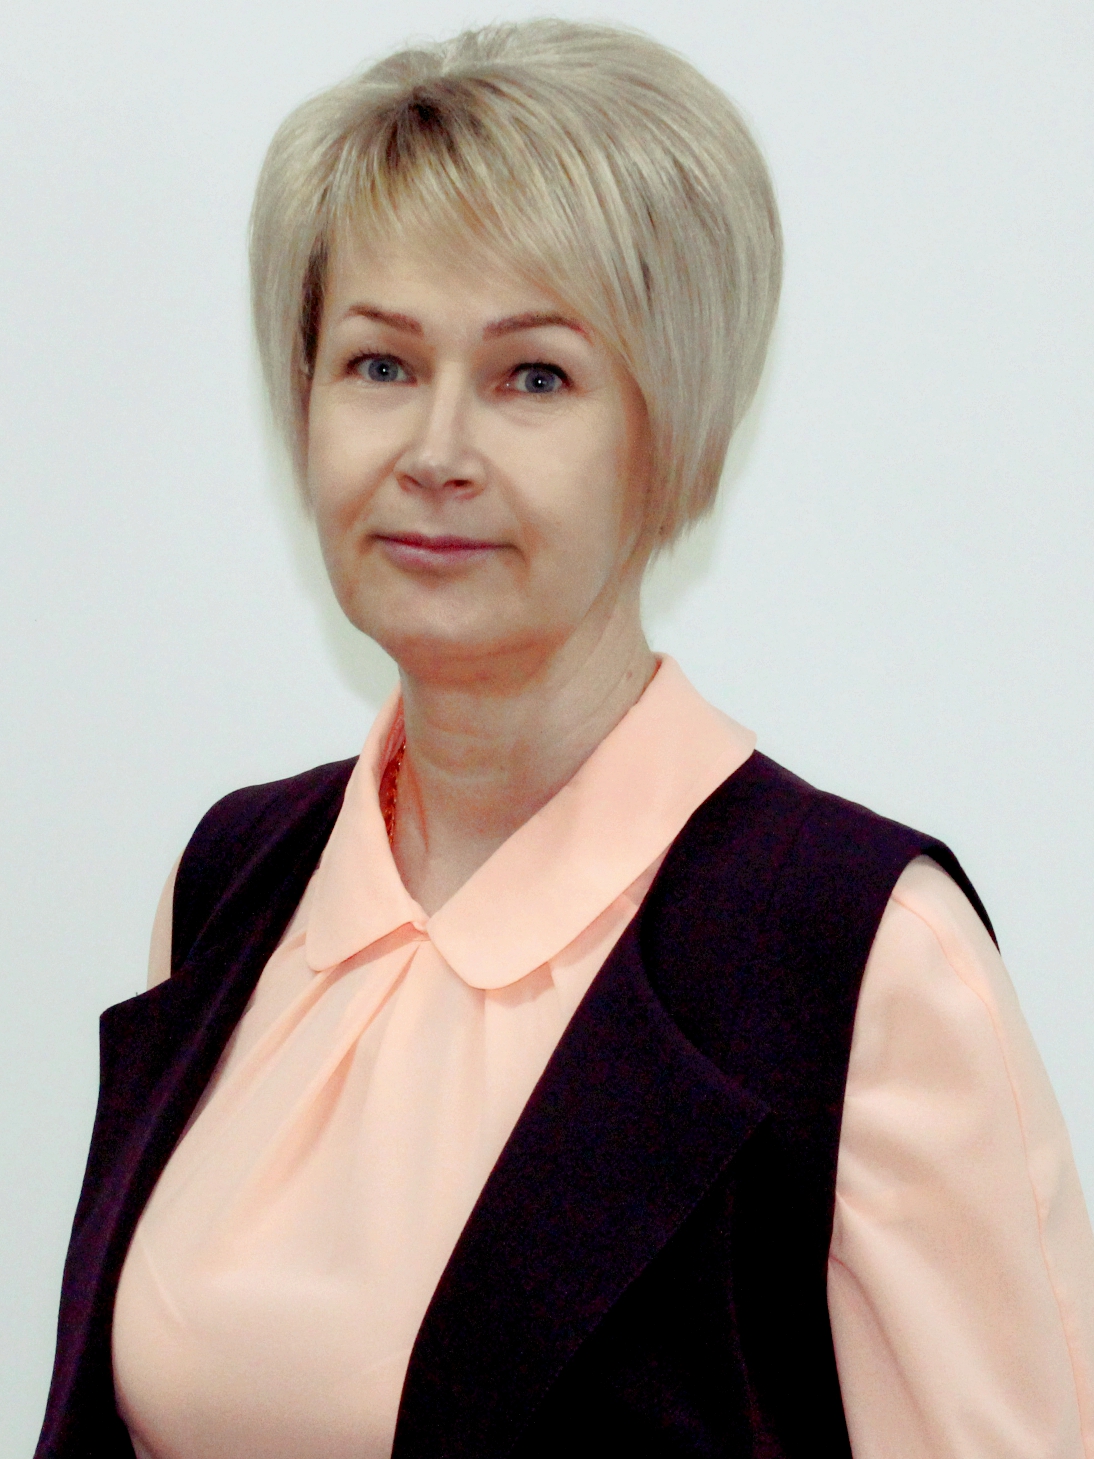 Баловина Ольга Борисовна.